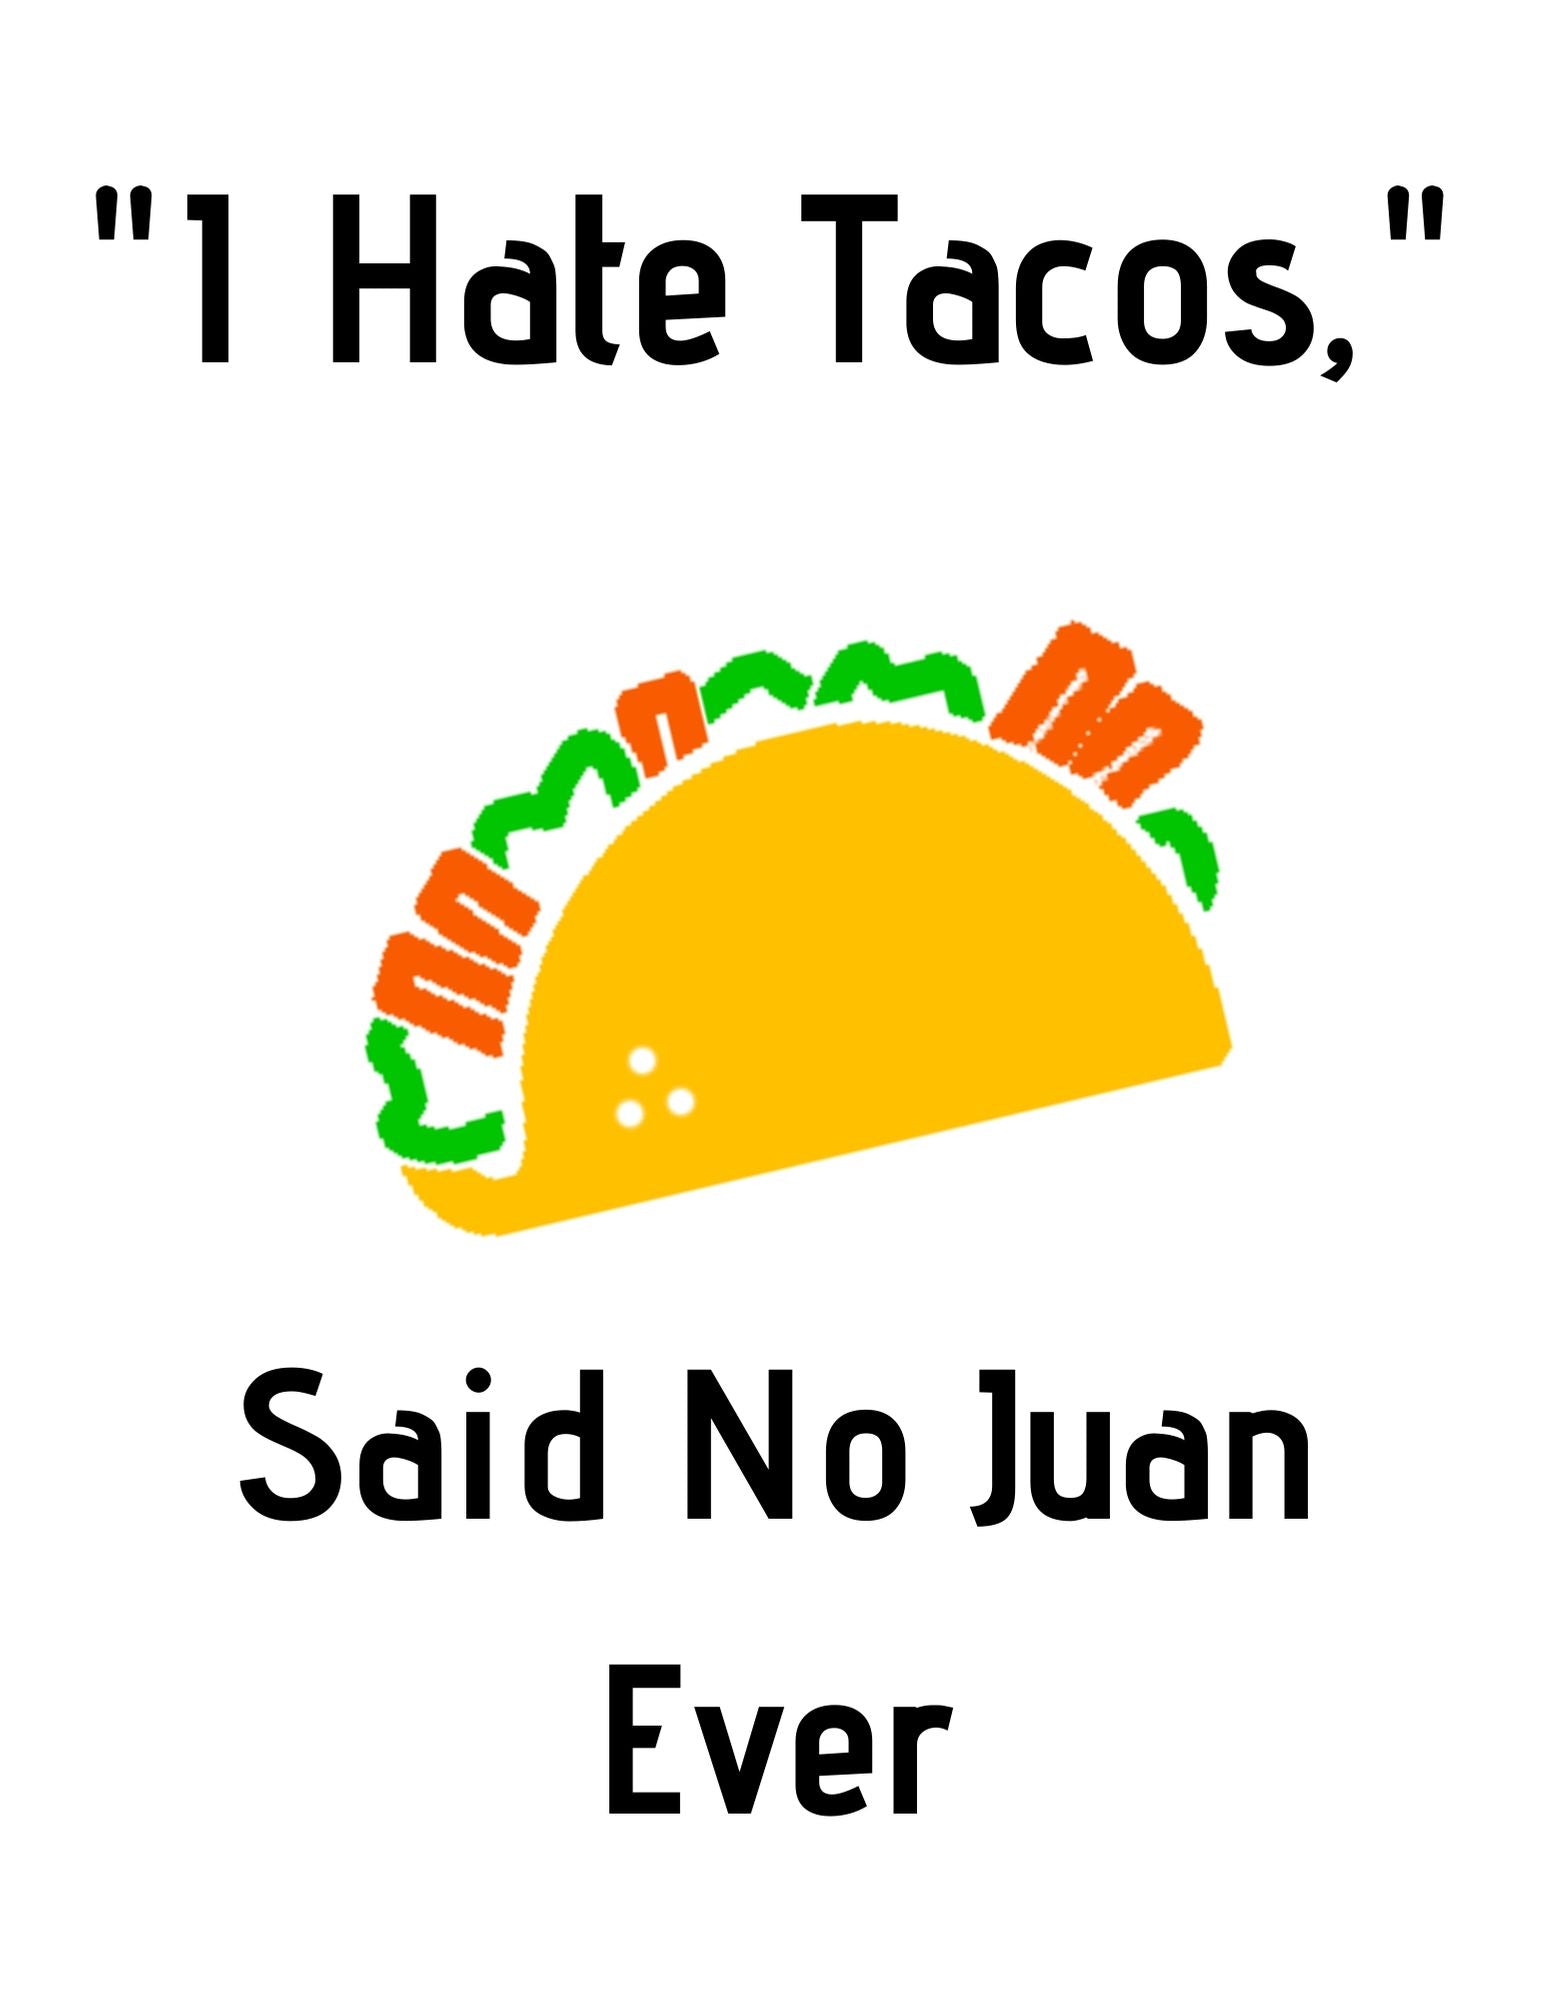 I Hate Tacos, Said No Juan Ever